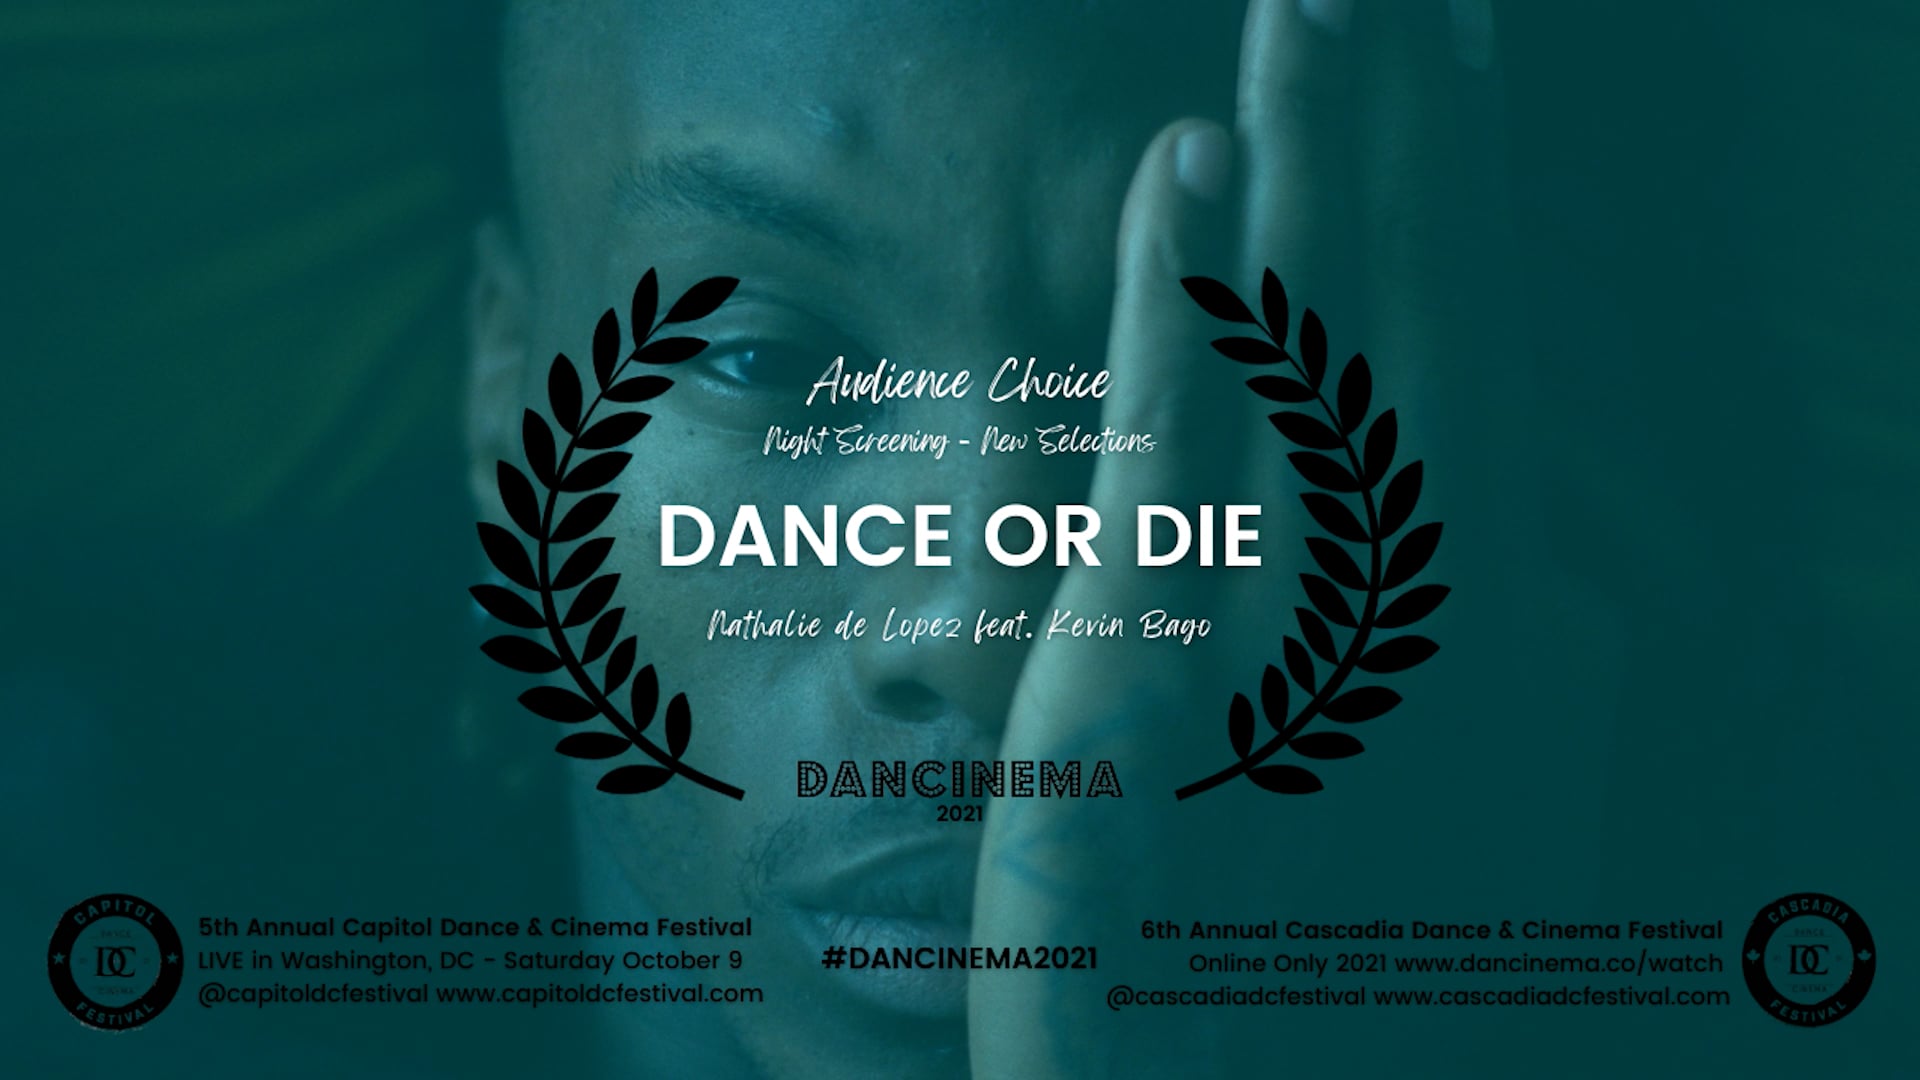 Dancinema 2021 Audience Choice: DANCE OR DIE